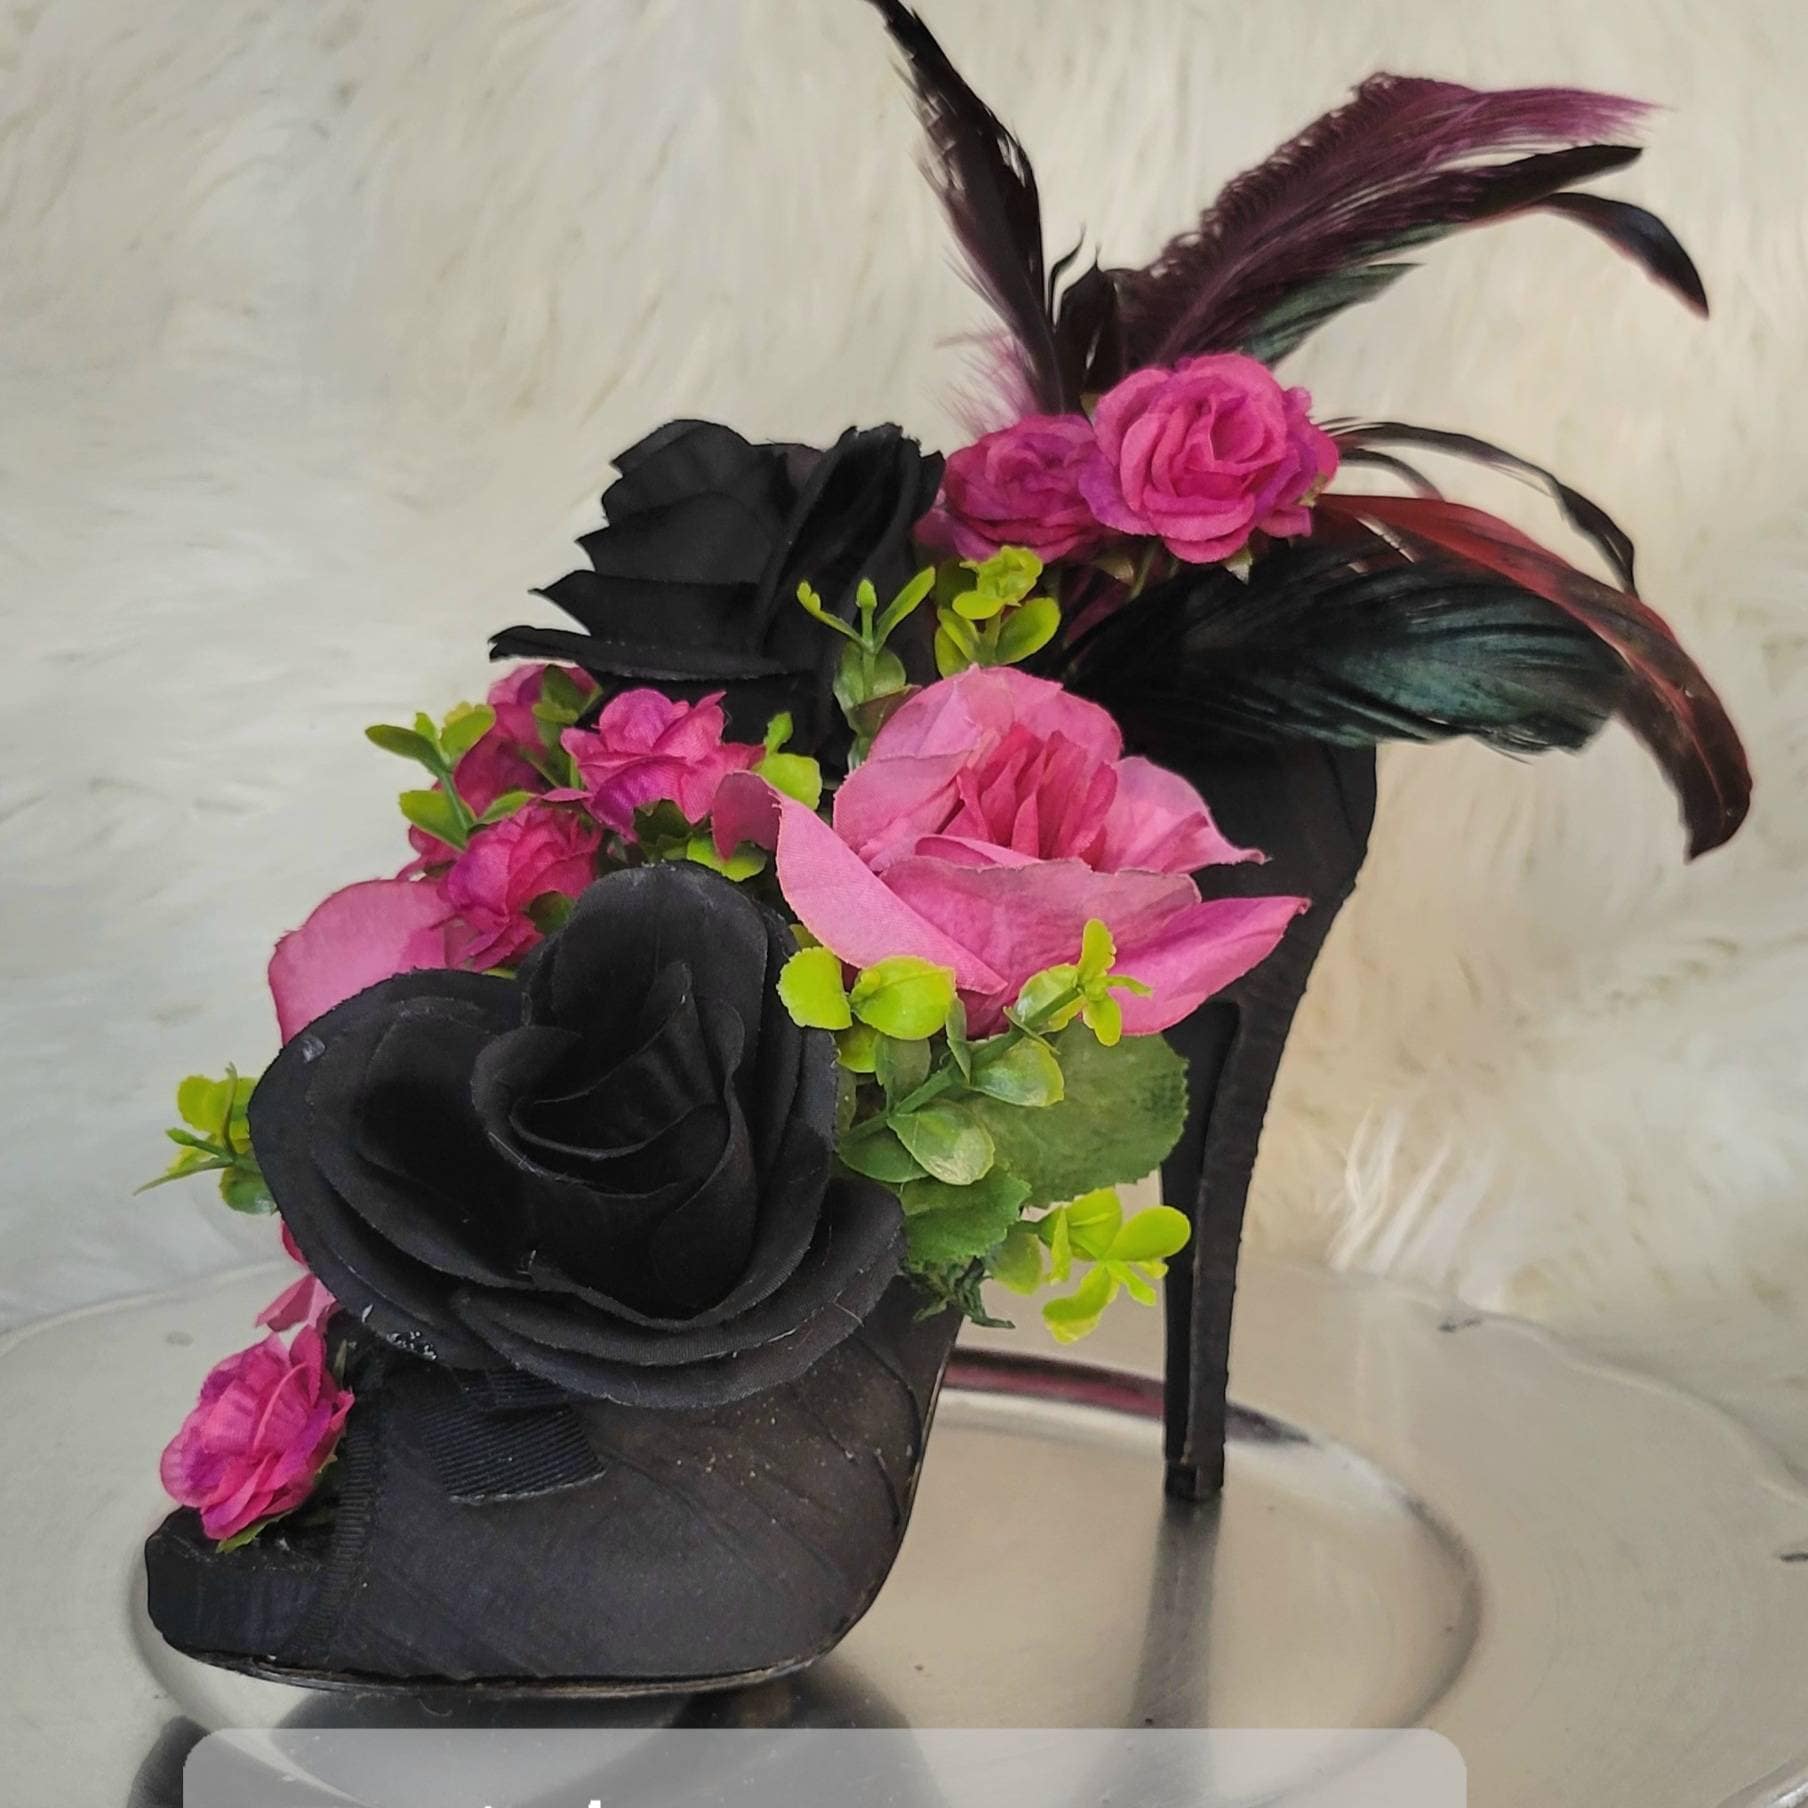 Decorative Floral High Heel Arrangement Shoe Centerpiece - Etsy